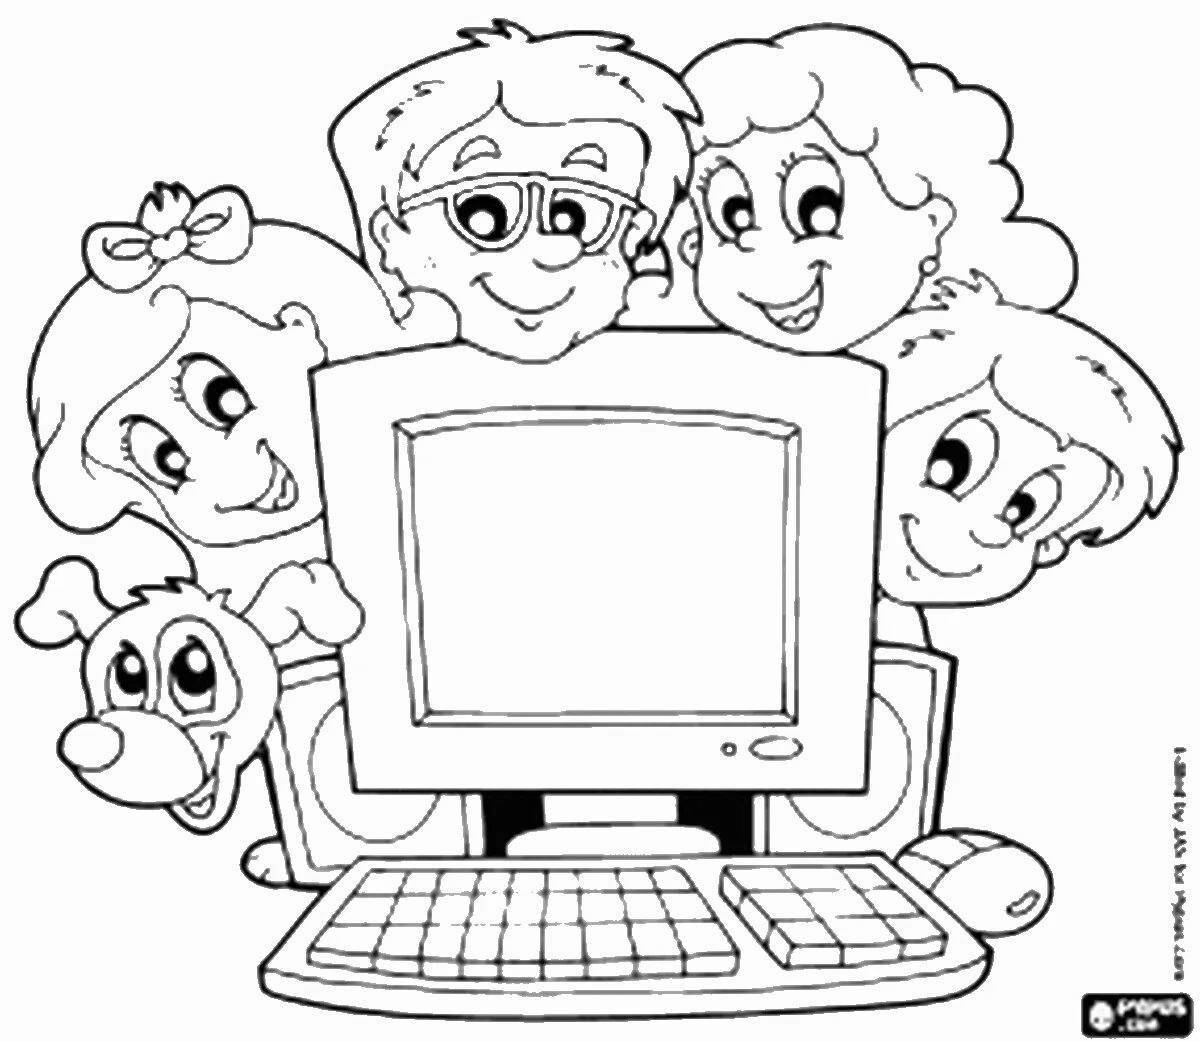 Привлекательная страница безопасного интернета для начальной школы